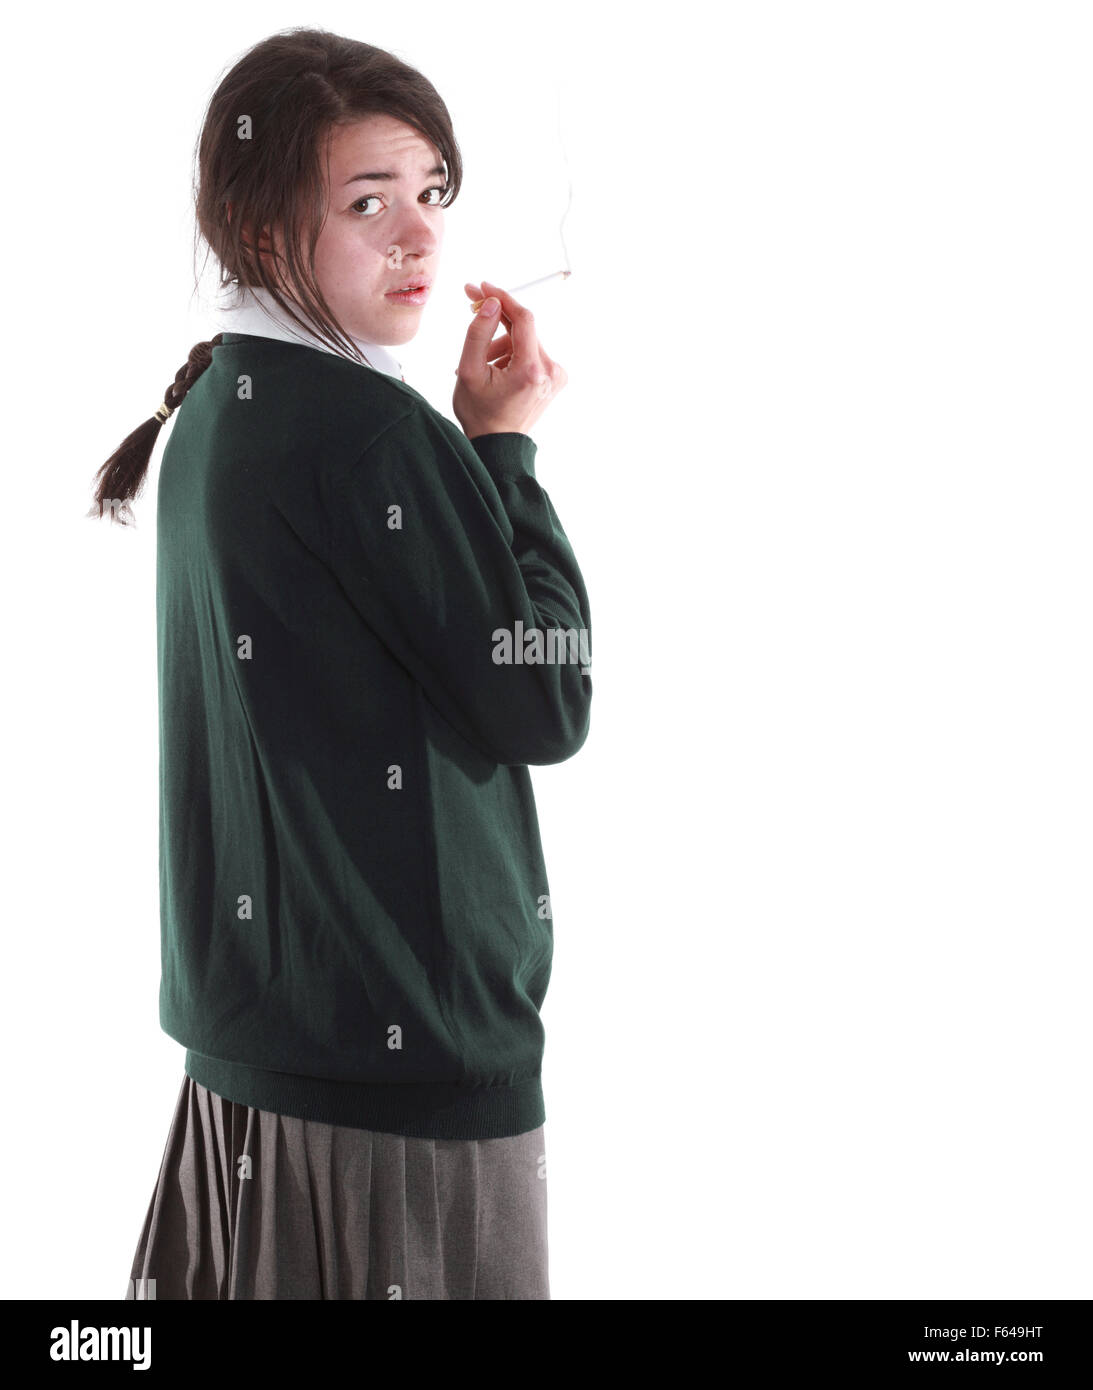 Tagliare isolato razza mista teenage schoolgirl nella sua uniforme scolastica Foto Stock